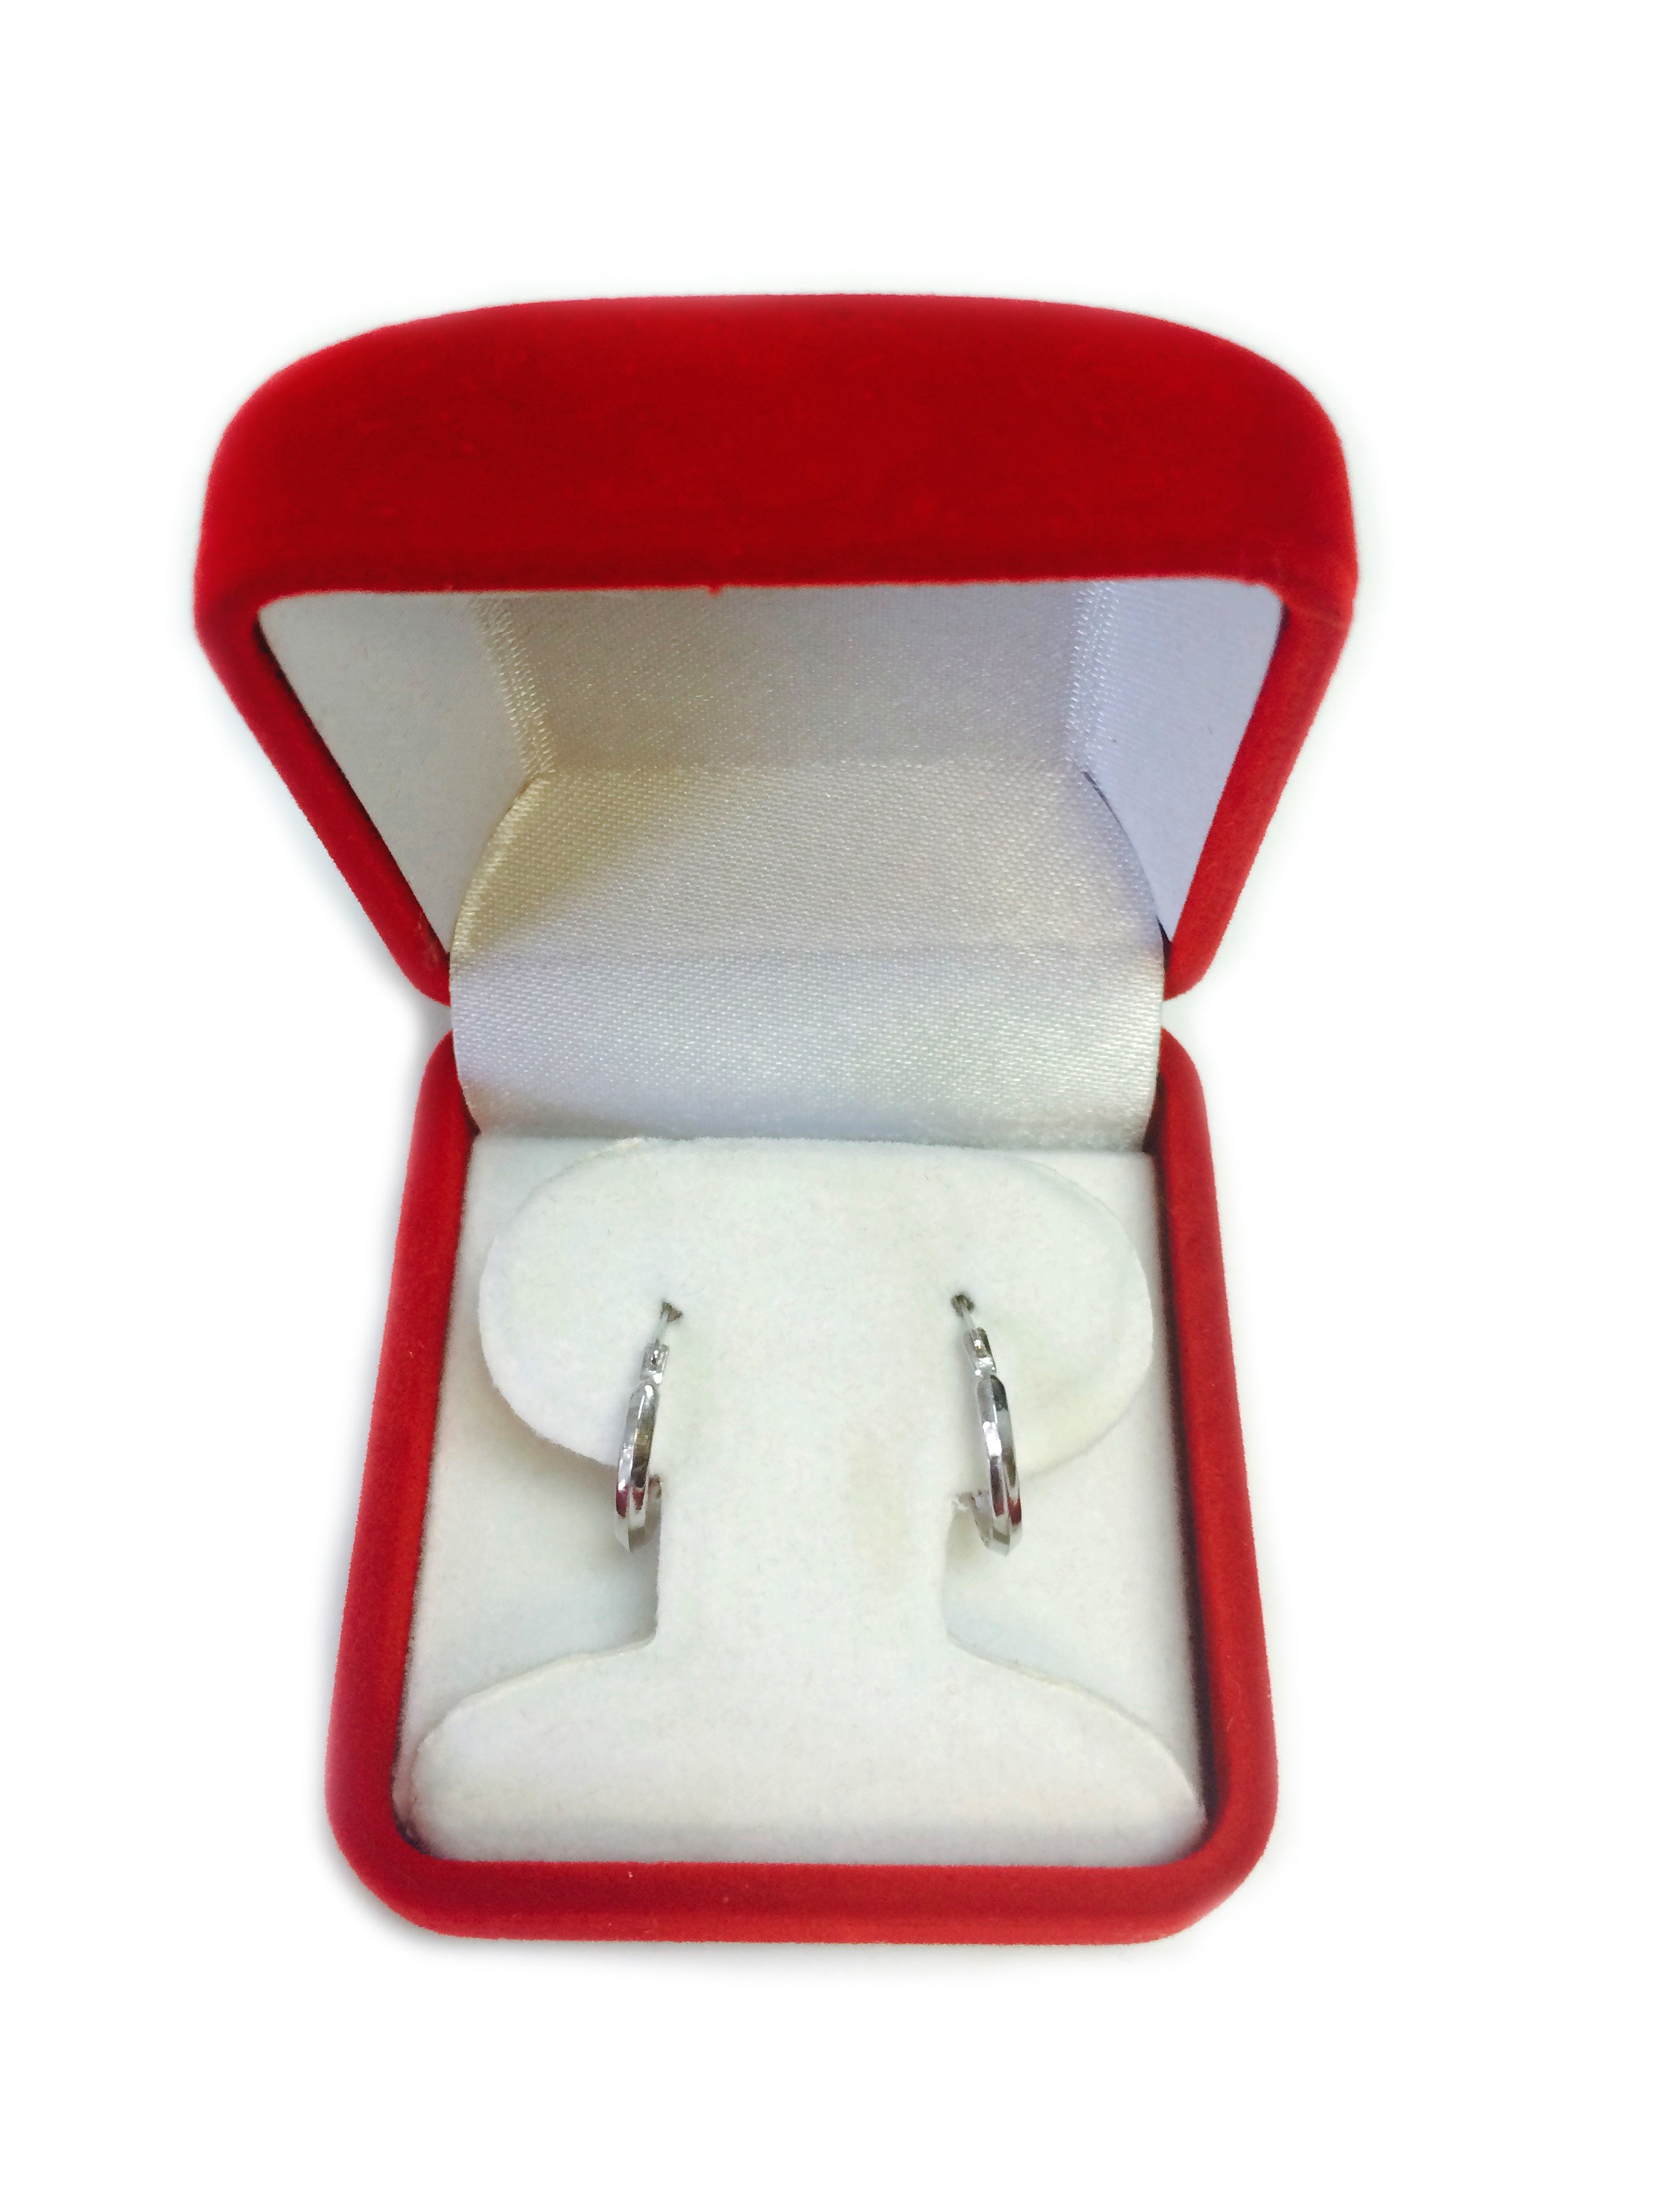 10k White Gold Shiny Diamond Cut Round Hoop Earrings, Diameter 15mm